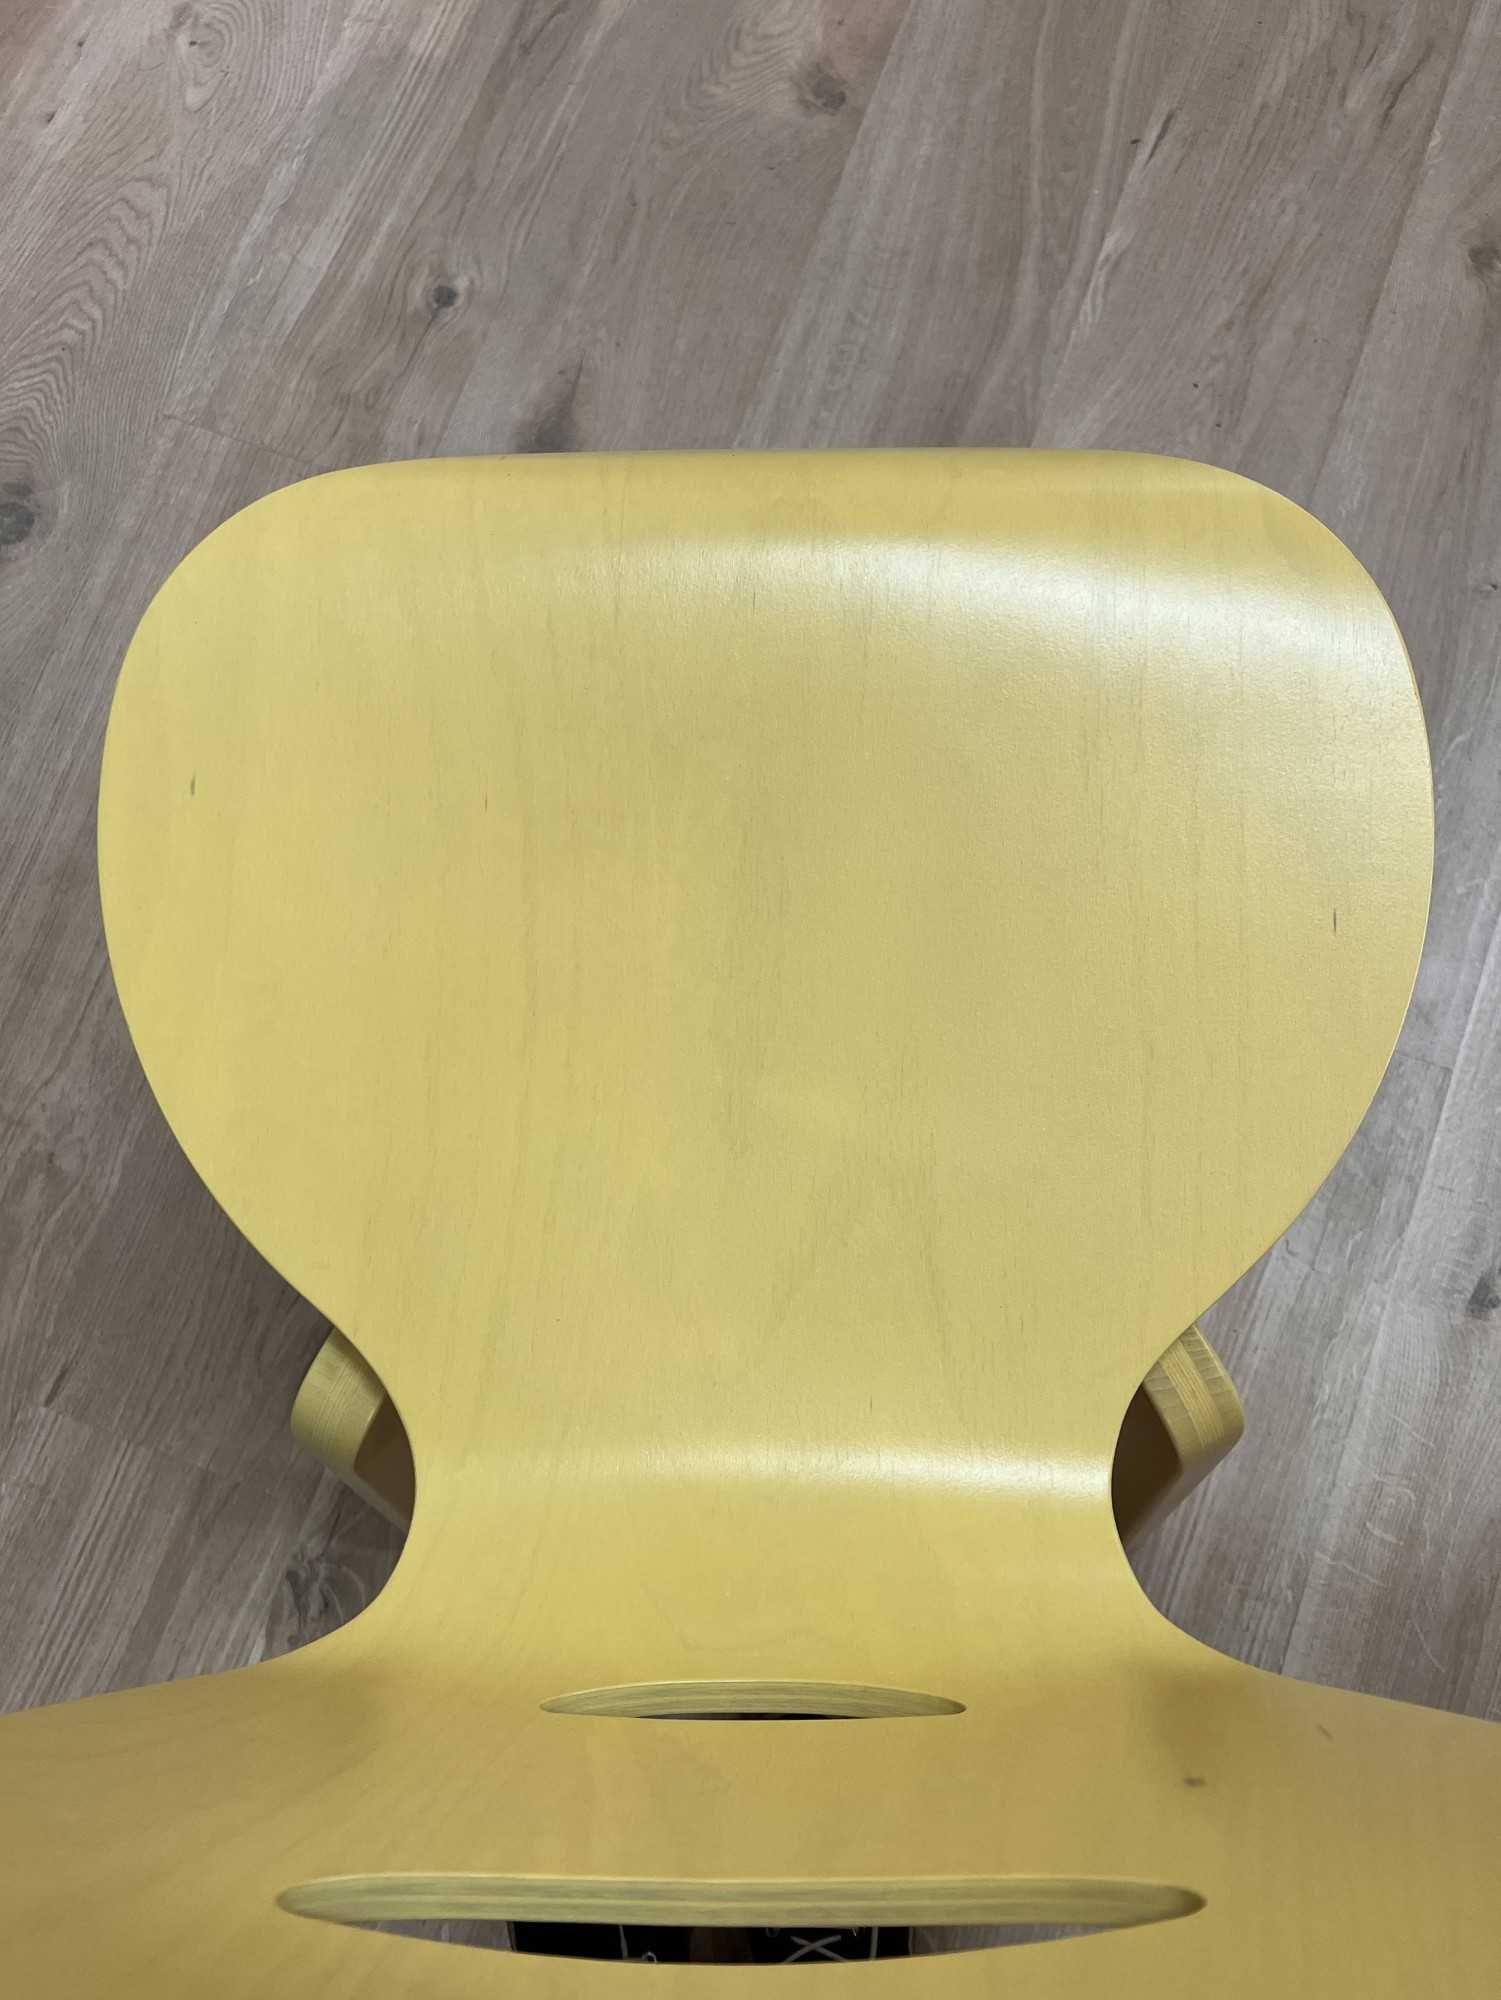 Krzesło sklejkowe miętowe,żółte,białe CAFE-VII LGW Nowy styl do wyboru